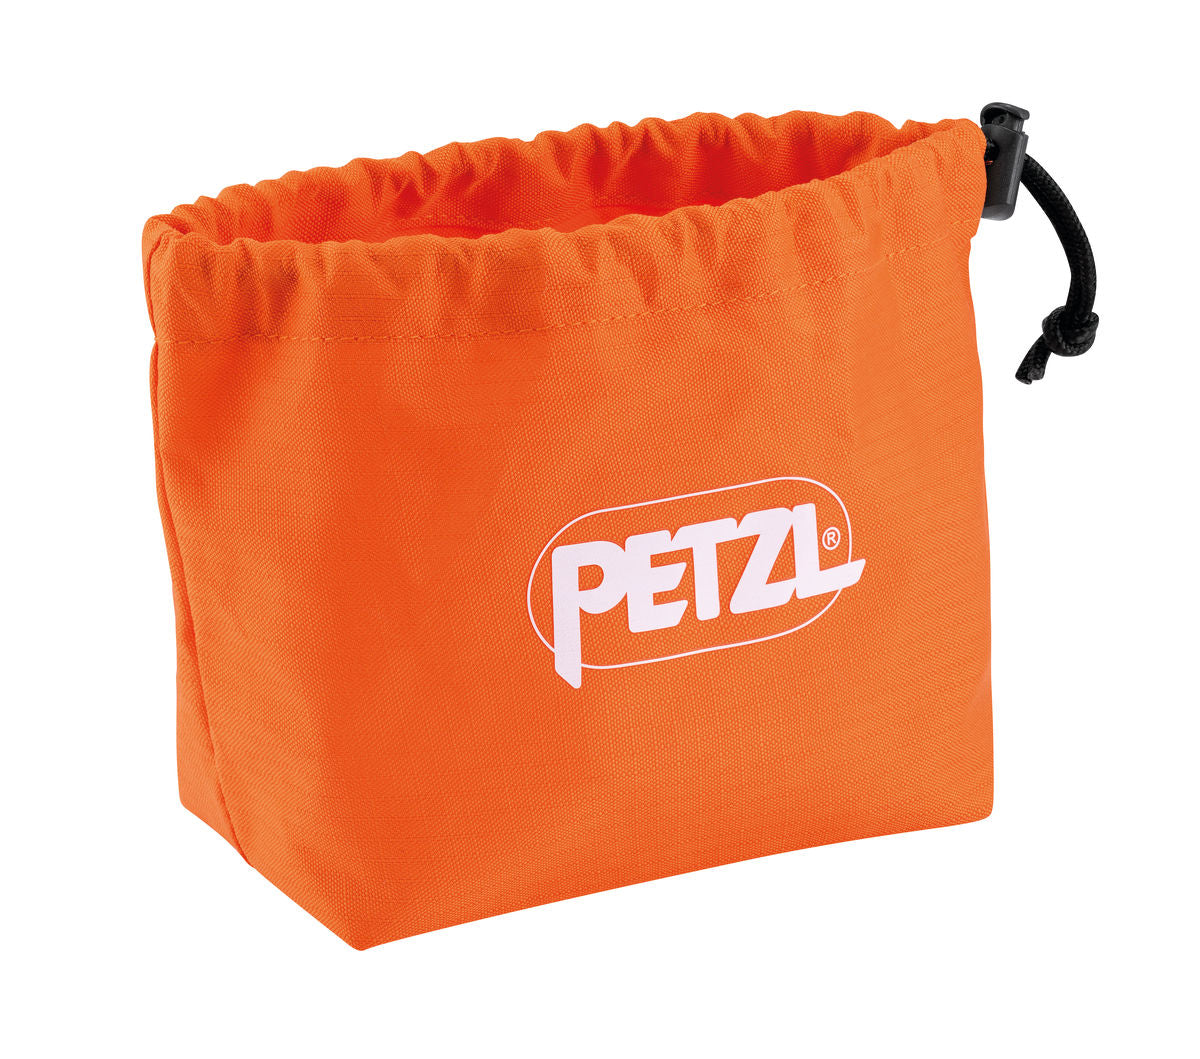 Petzl CORD-TEC transport bag